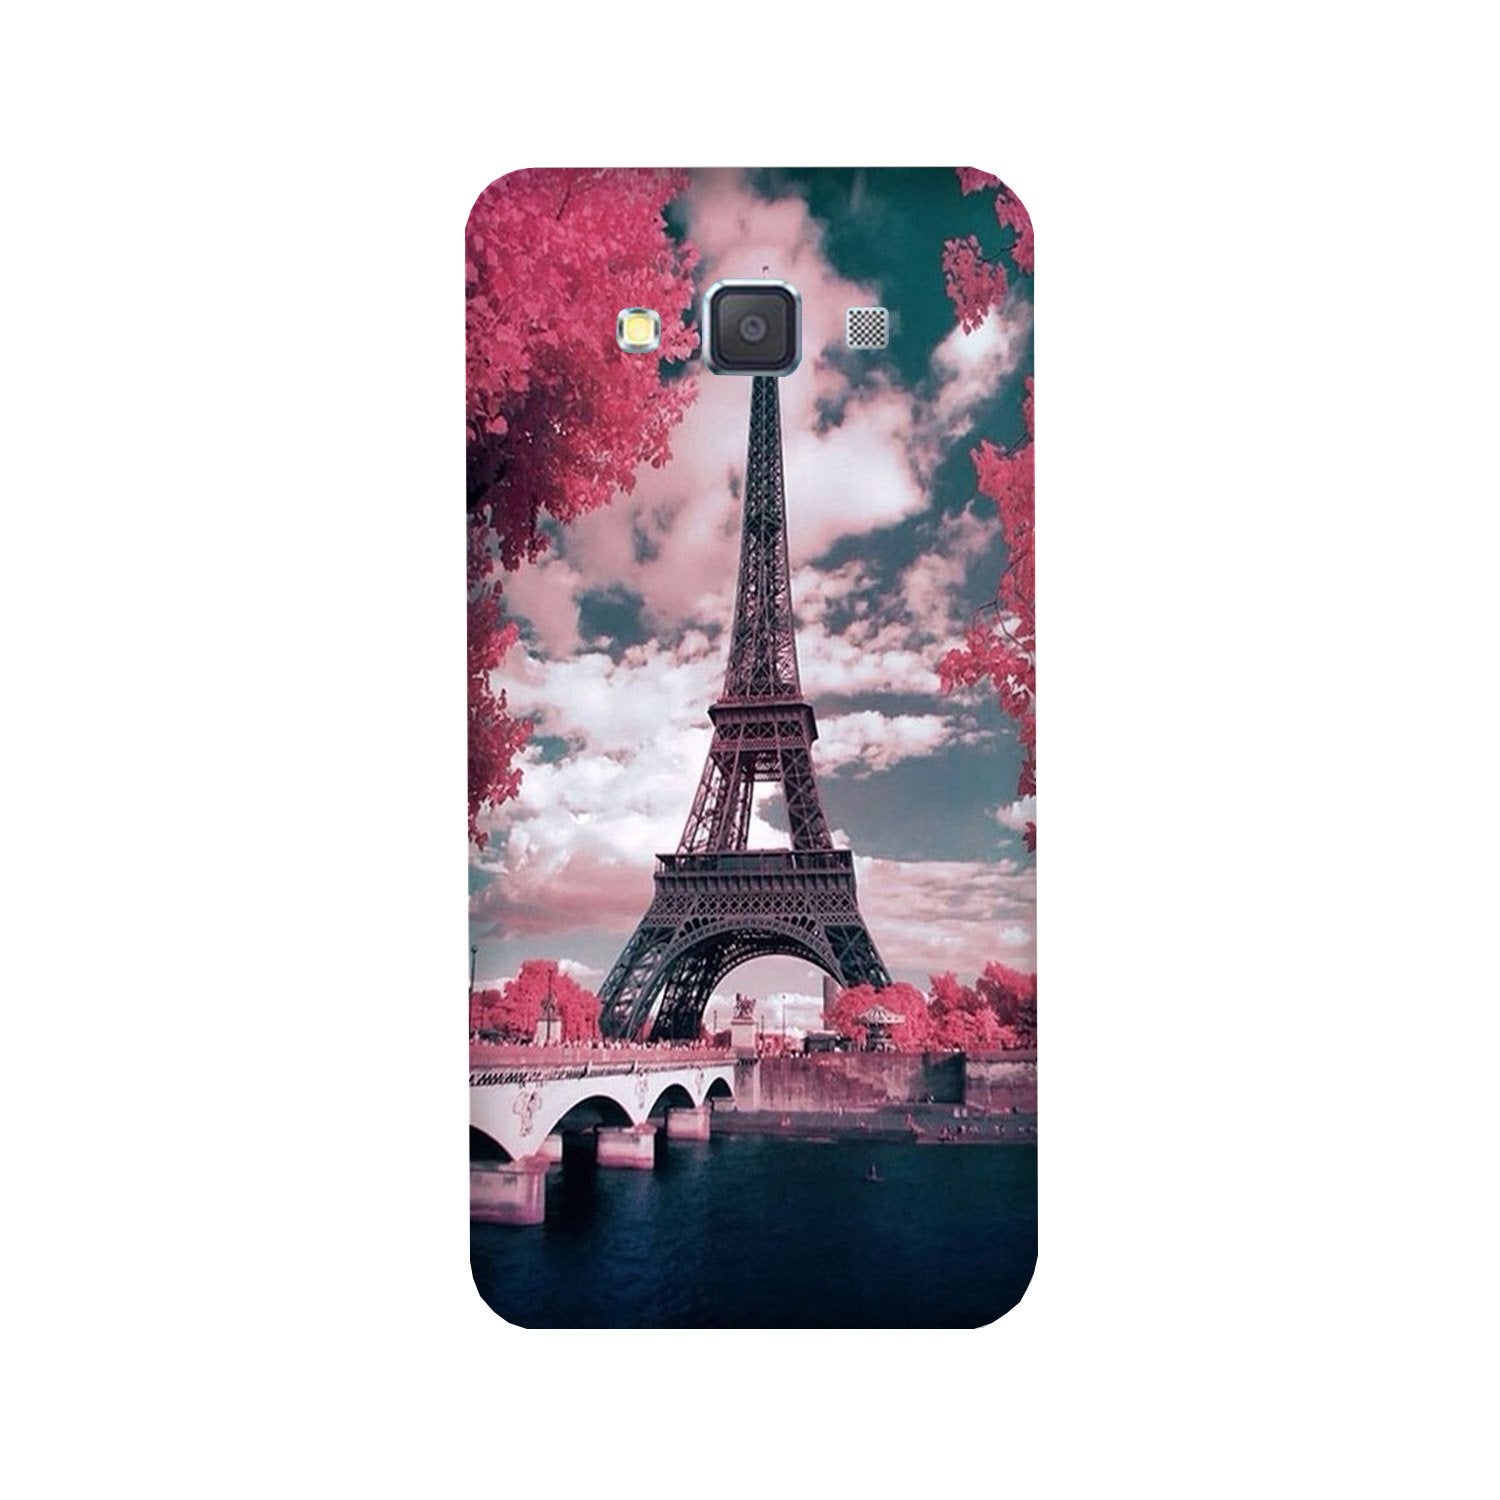 Eiffel Tower Case for Galaxy J5 (2016)  (Design - 101)